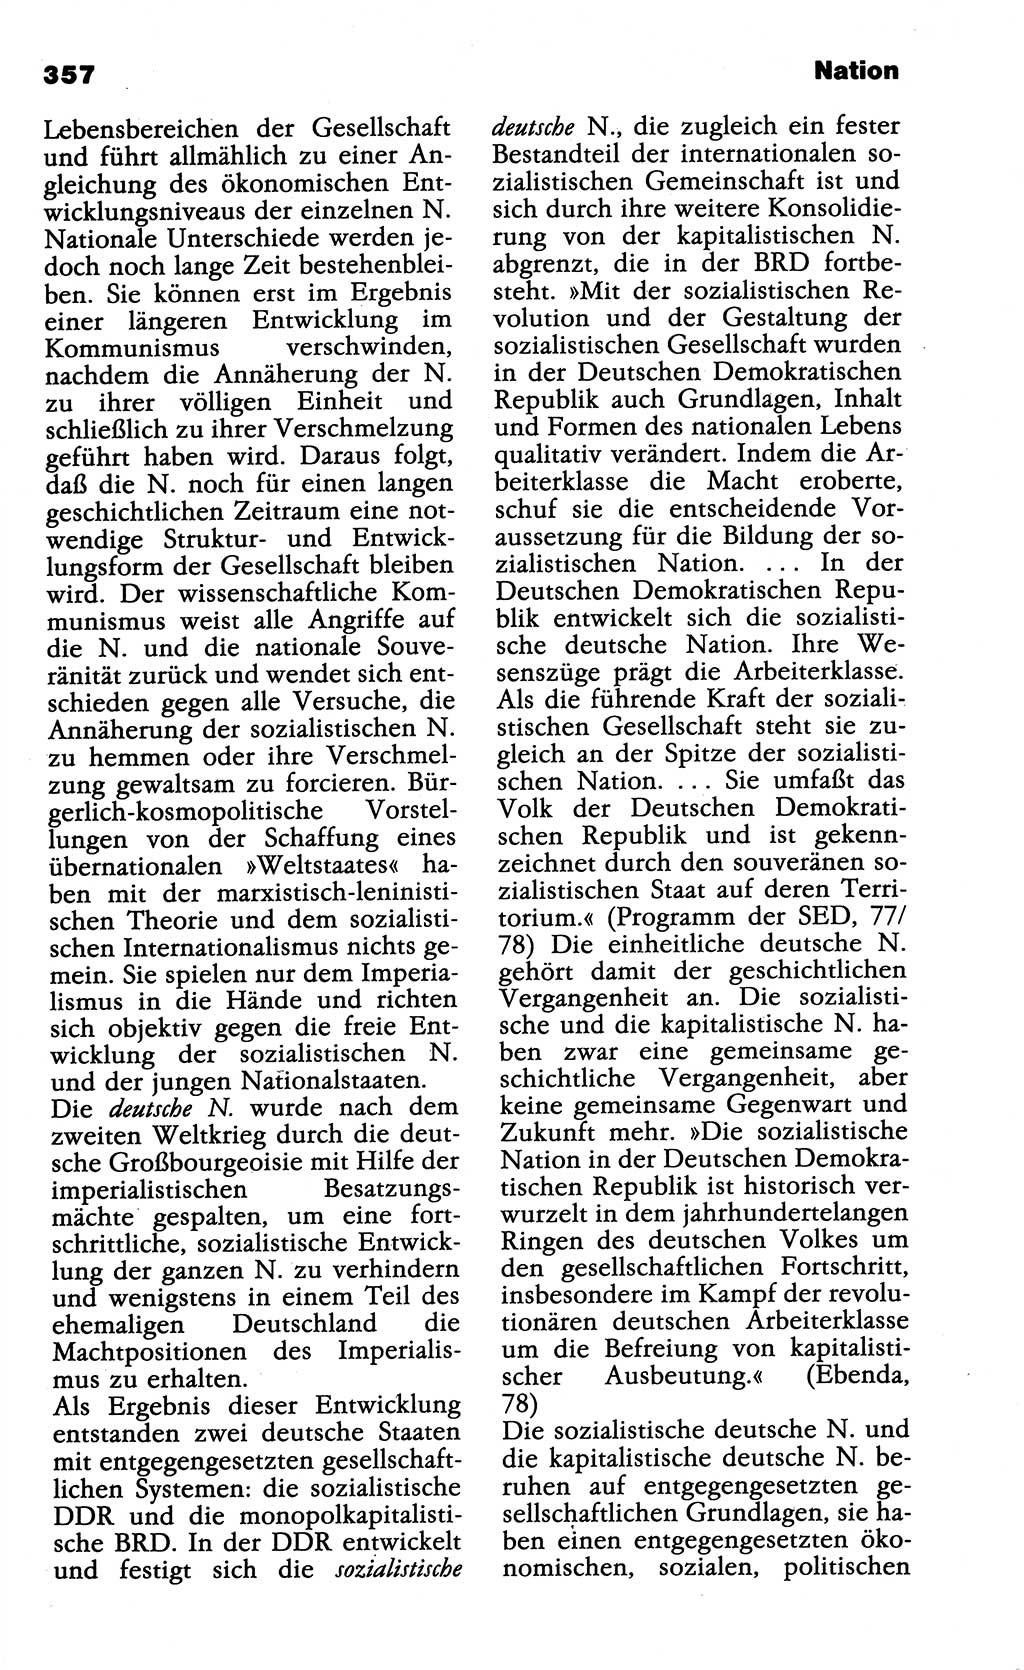 Wörterbuch der marxistisch-leninistischen Philosophie [Deutsche Demokratische Republik (DDR)] 1985, Seite 357 (Wb. ML Phil. DDR 1985, S. 357)